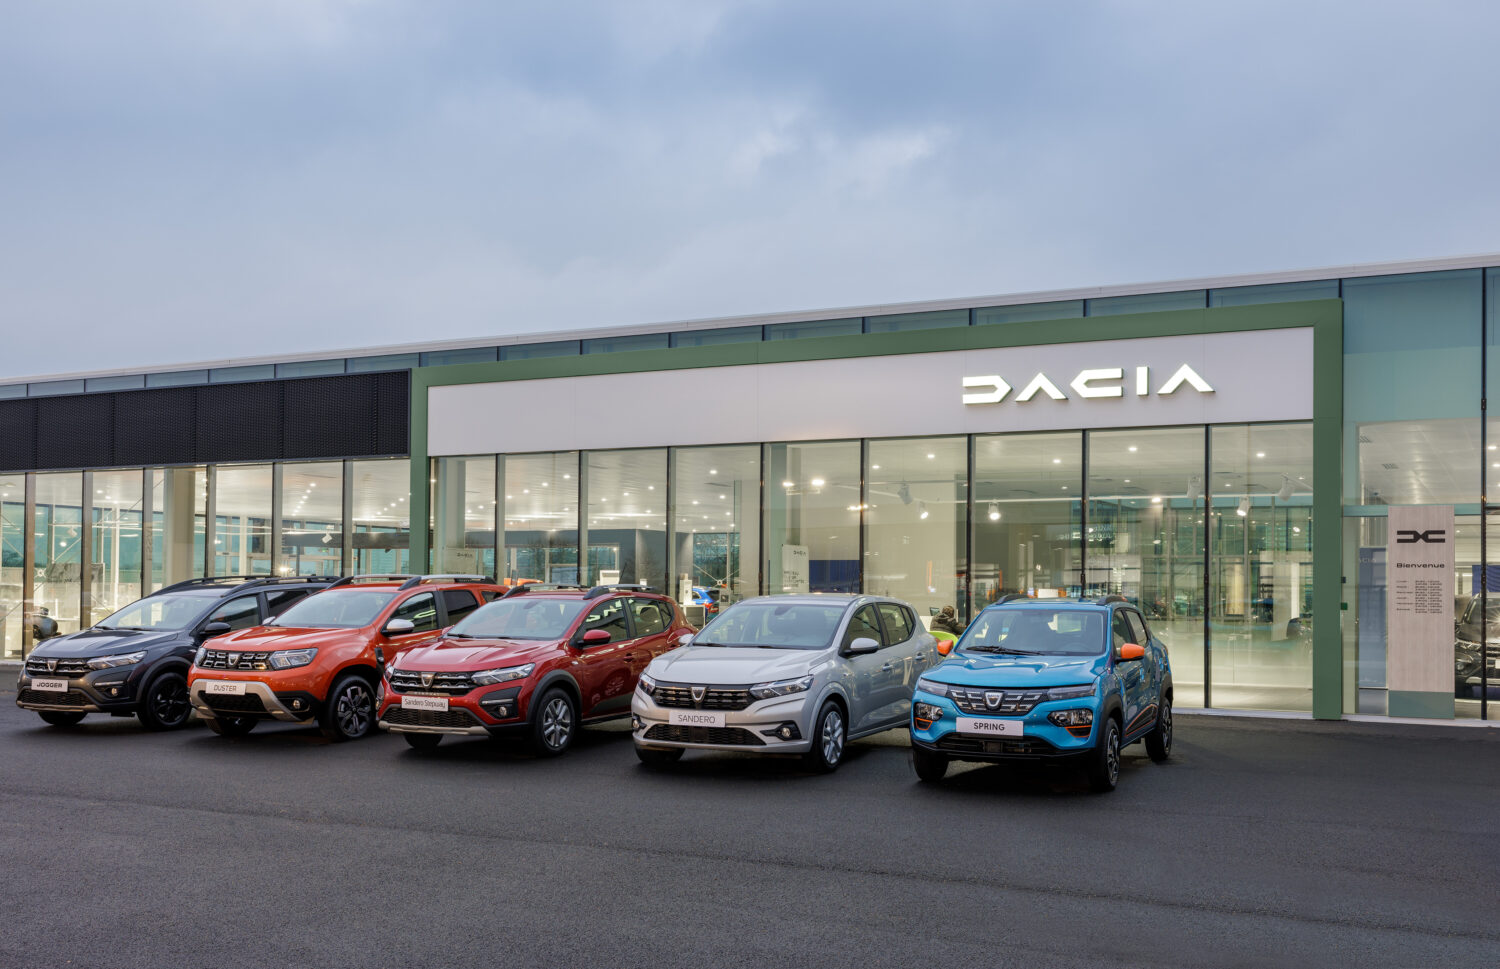 2022 - Nouvelle identité visuelle du réseau Dacia